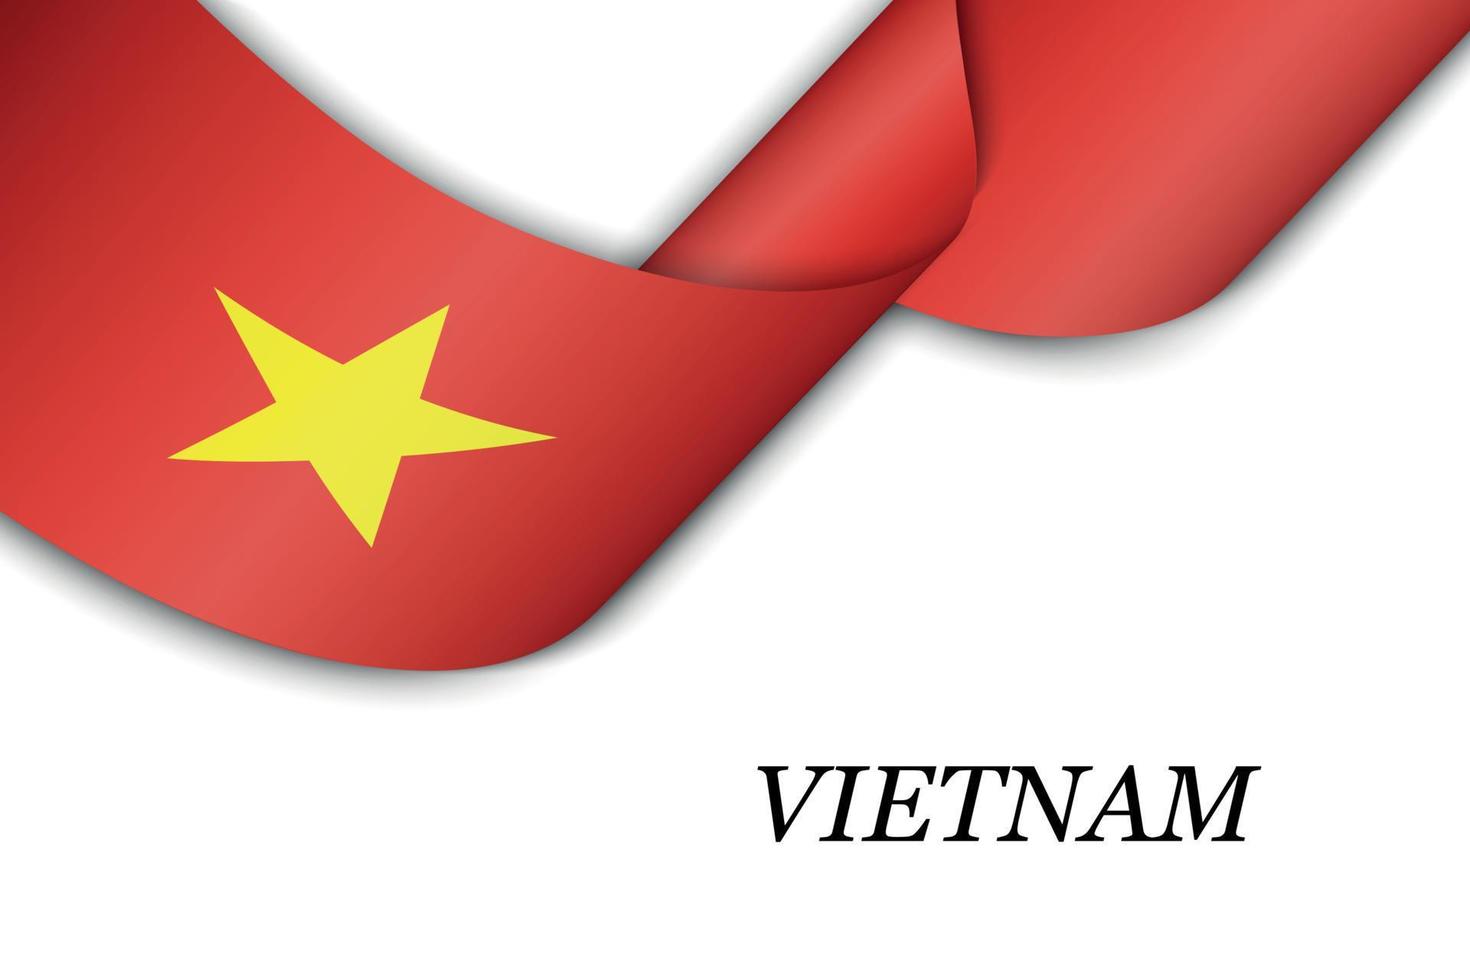 zwaaiend lint of spandoek met vlag van vietnam vector